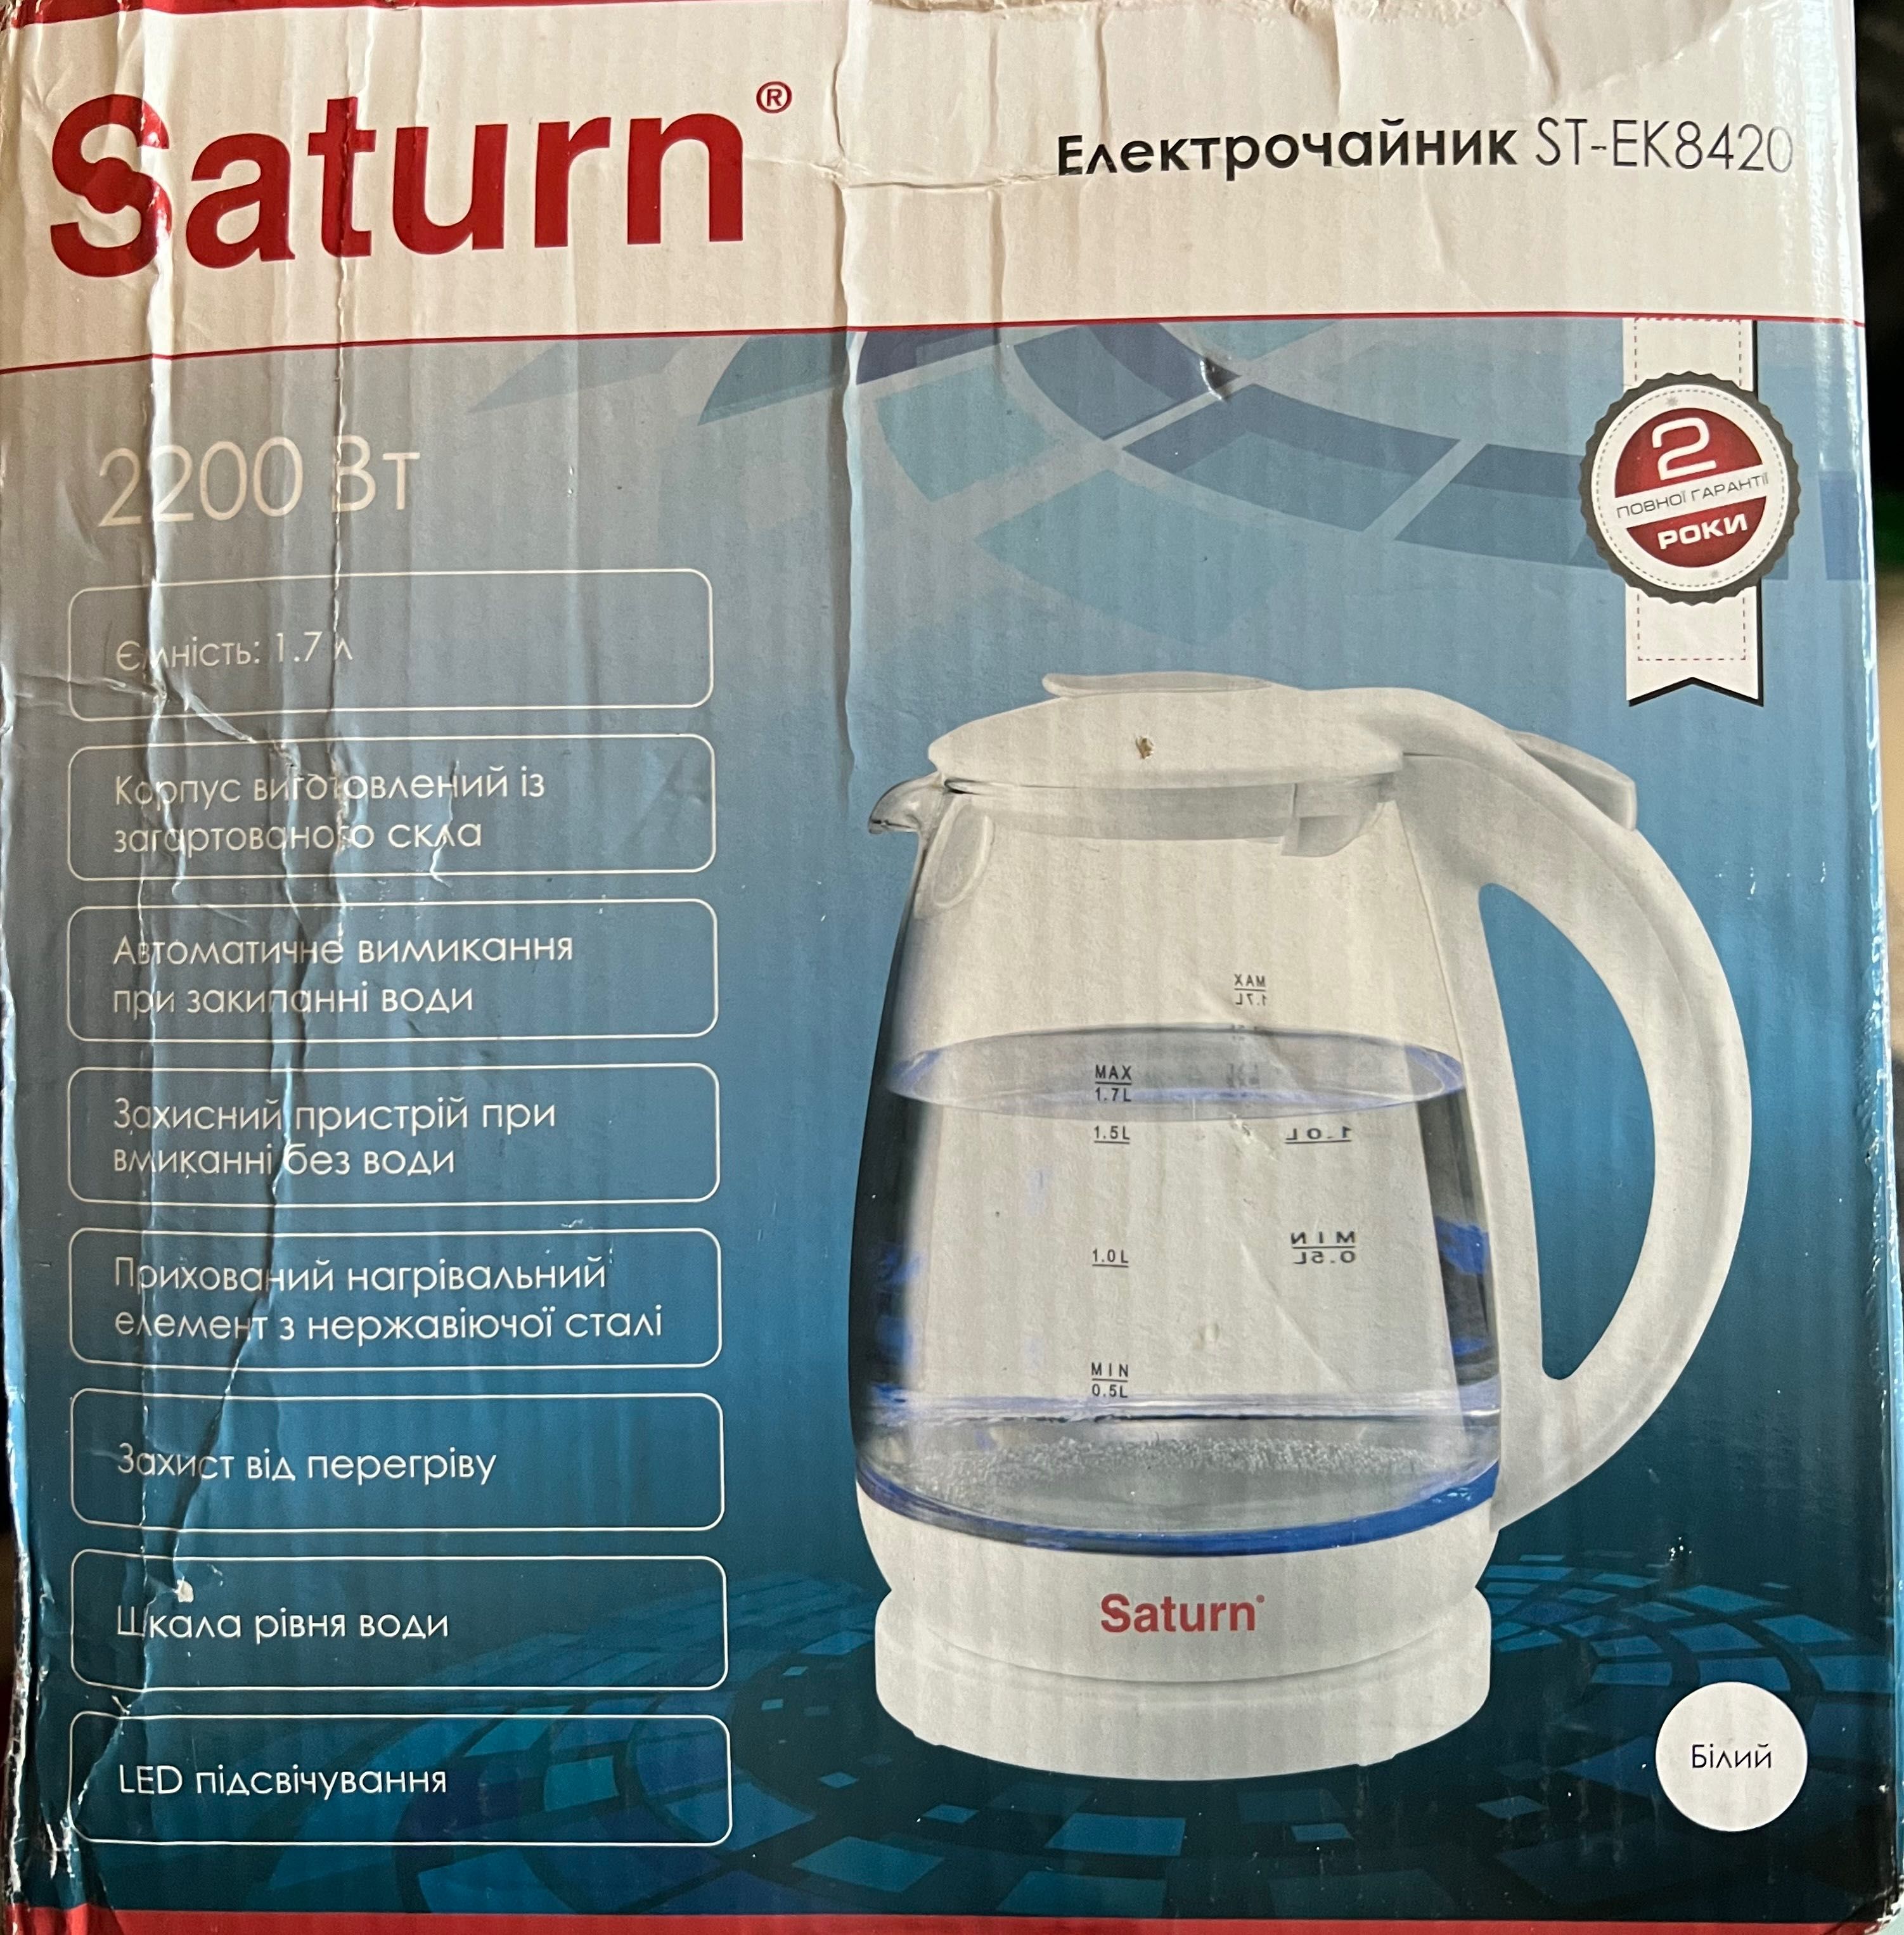 Електрочайник Saturn